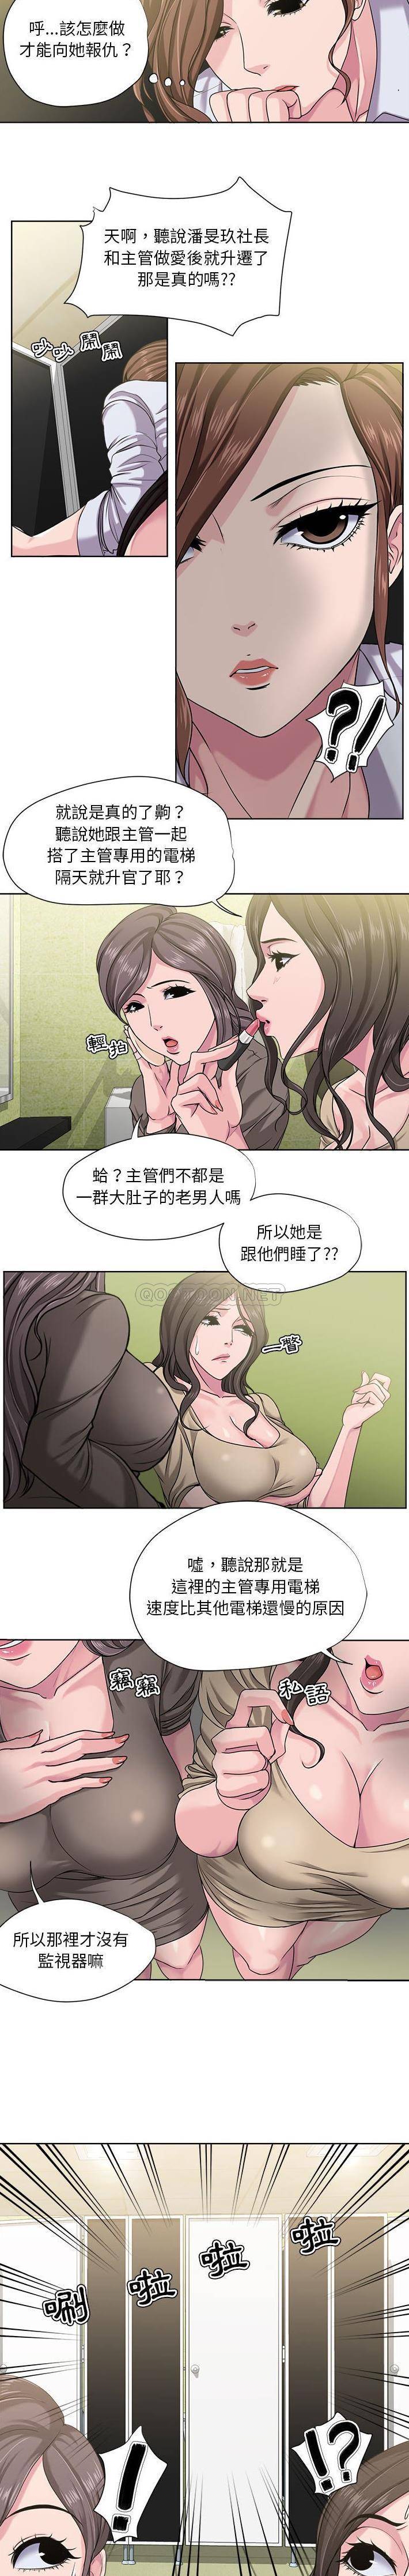 韩国污漫画 女人專門為難女人(女人的戰爭) 第8话 2